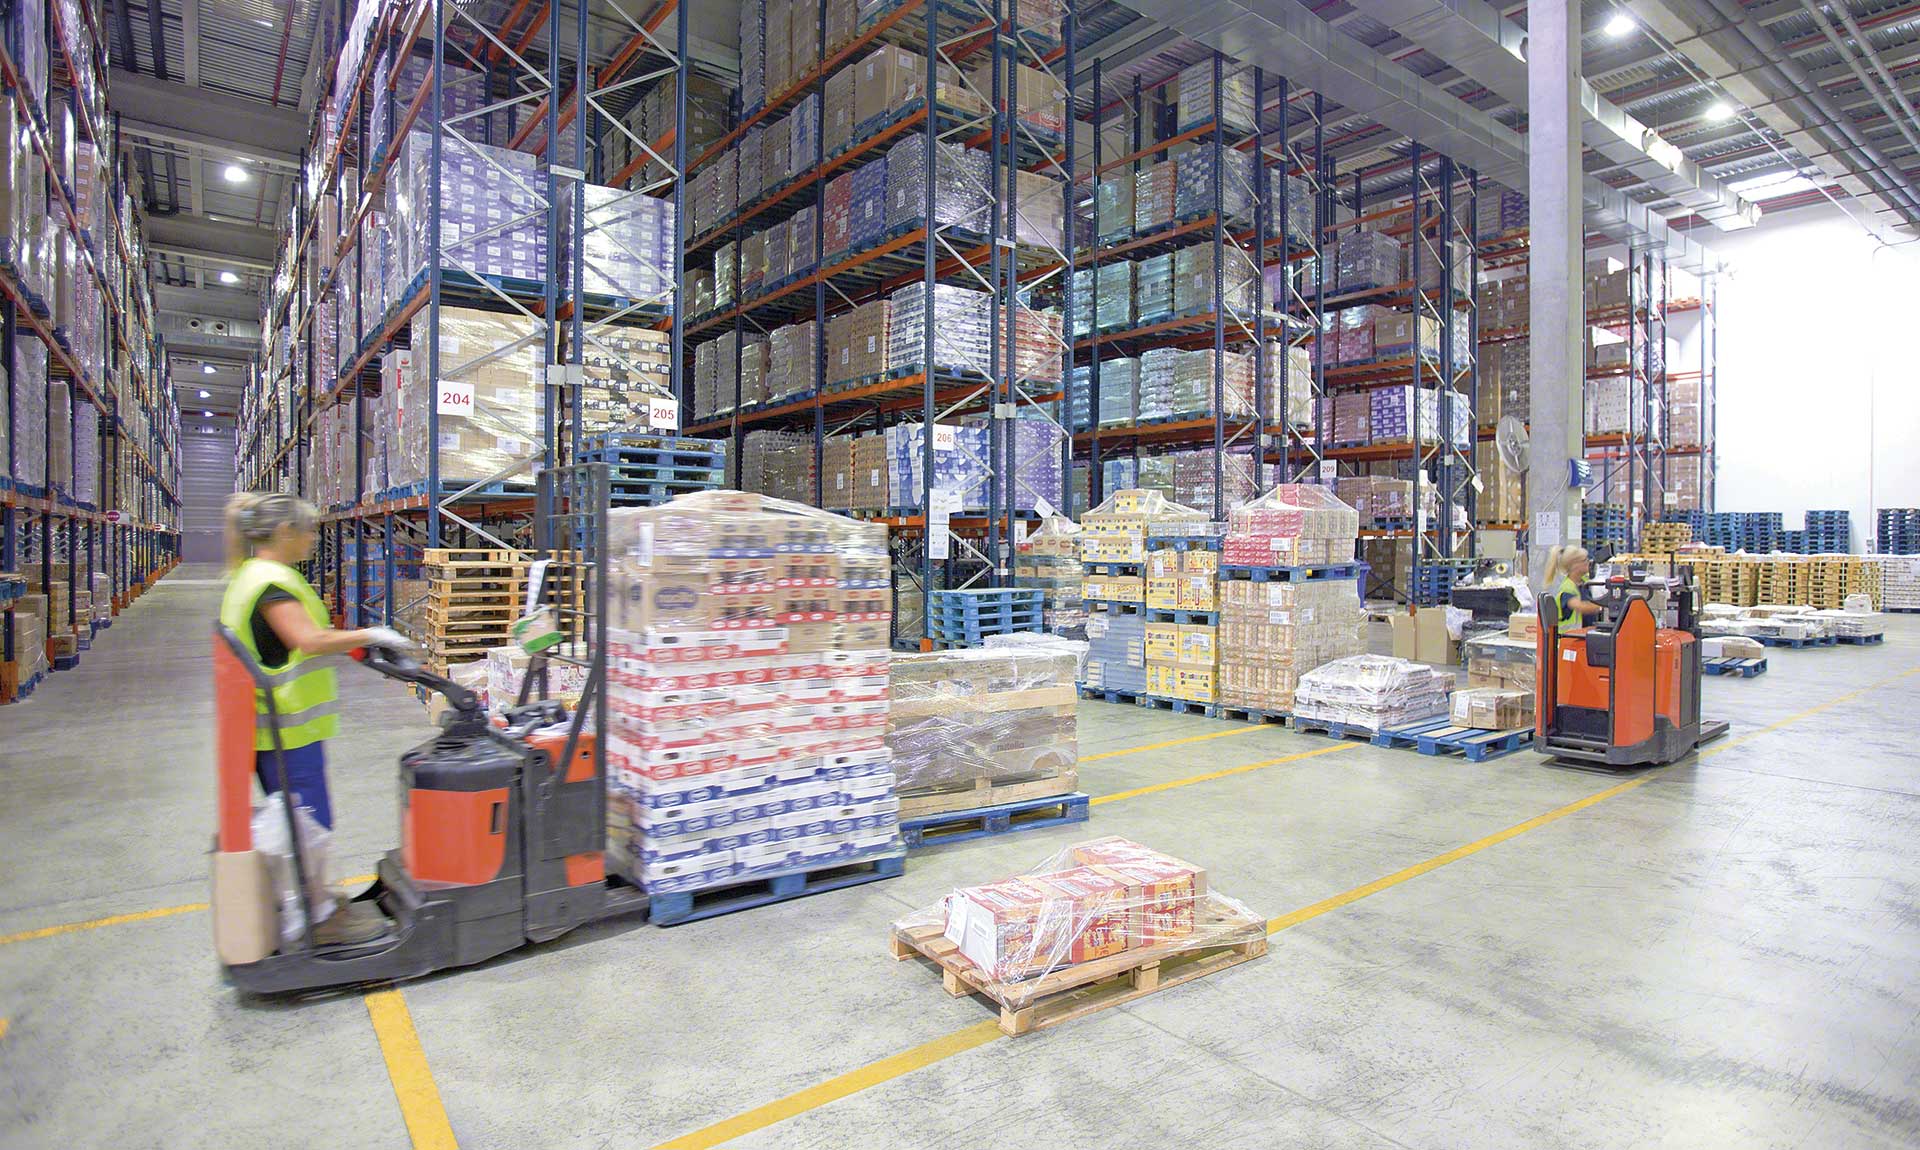 Un almacén de consolidación es una instalación logística que se encarga de agrupar los pedidos individuales en envíos de mayor volumen